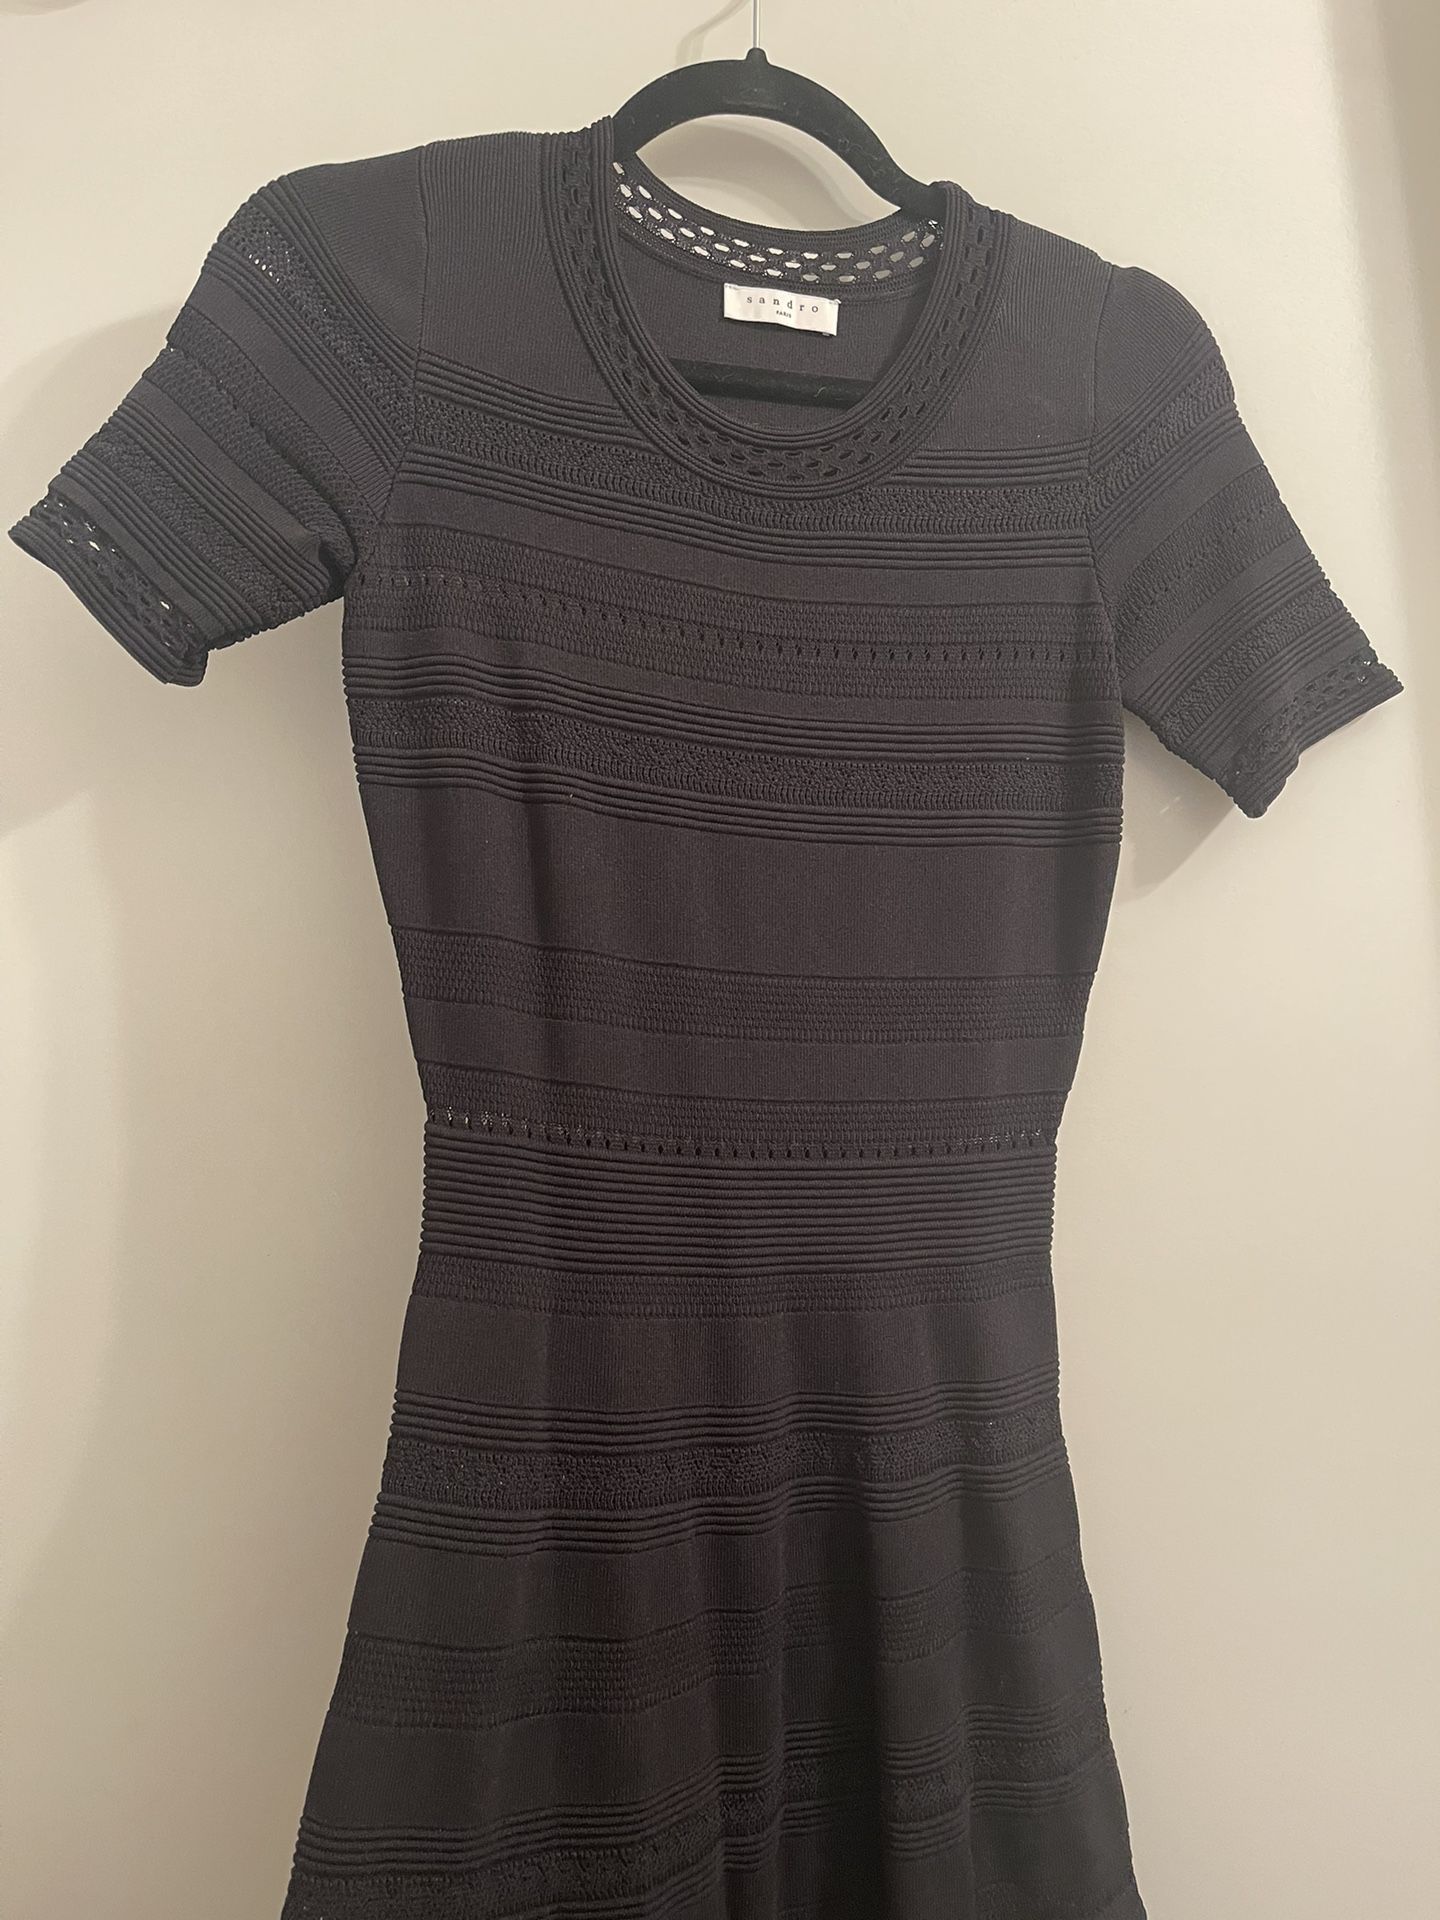 SANDRO Black Knit Dress, size 1